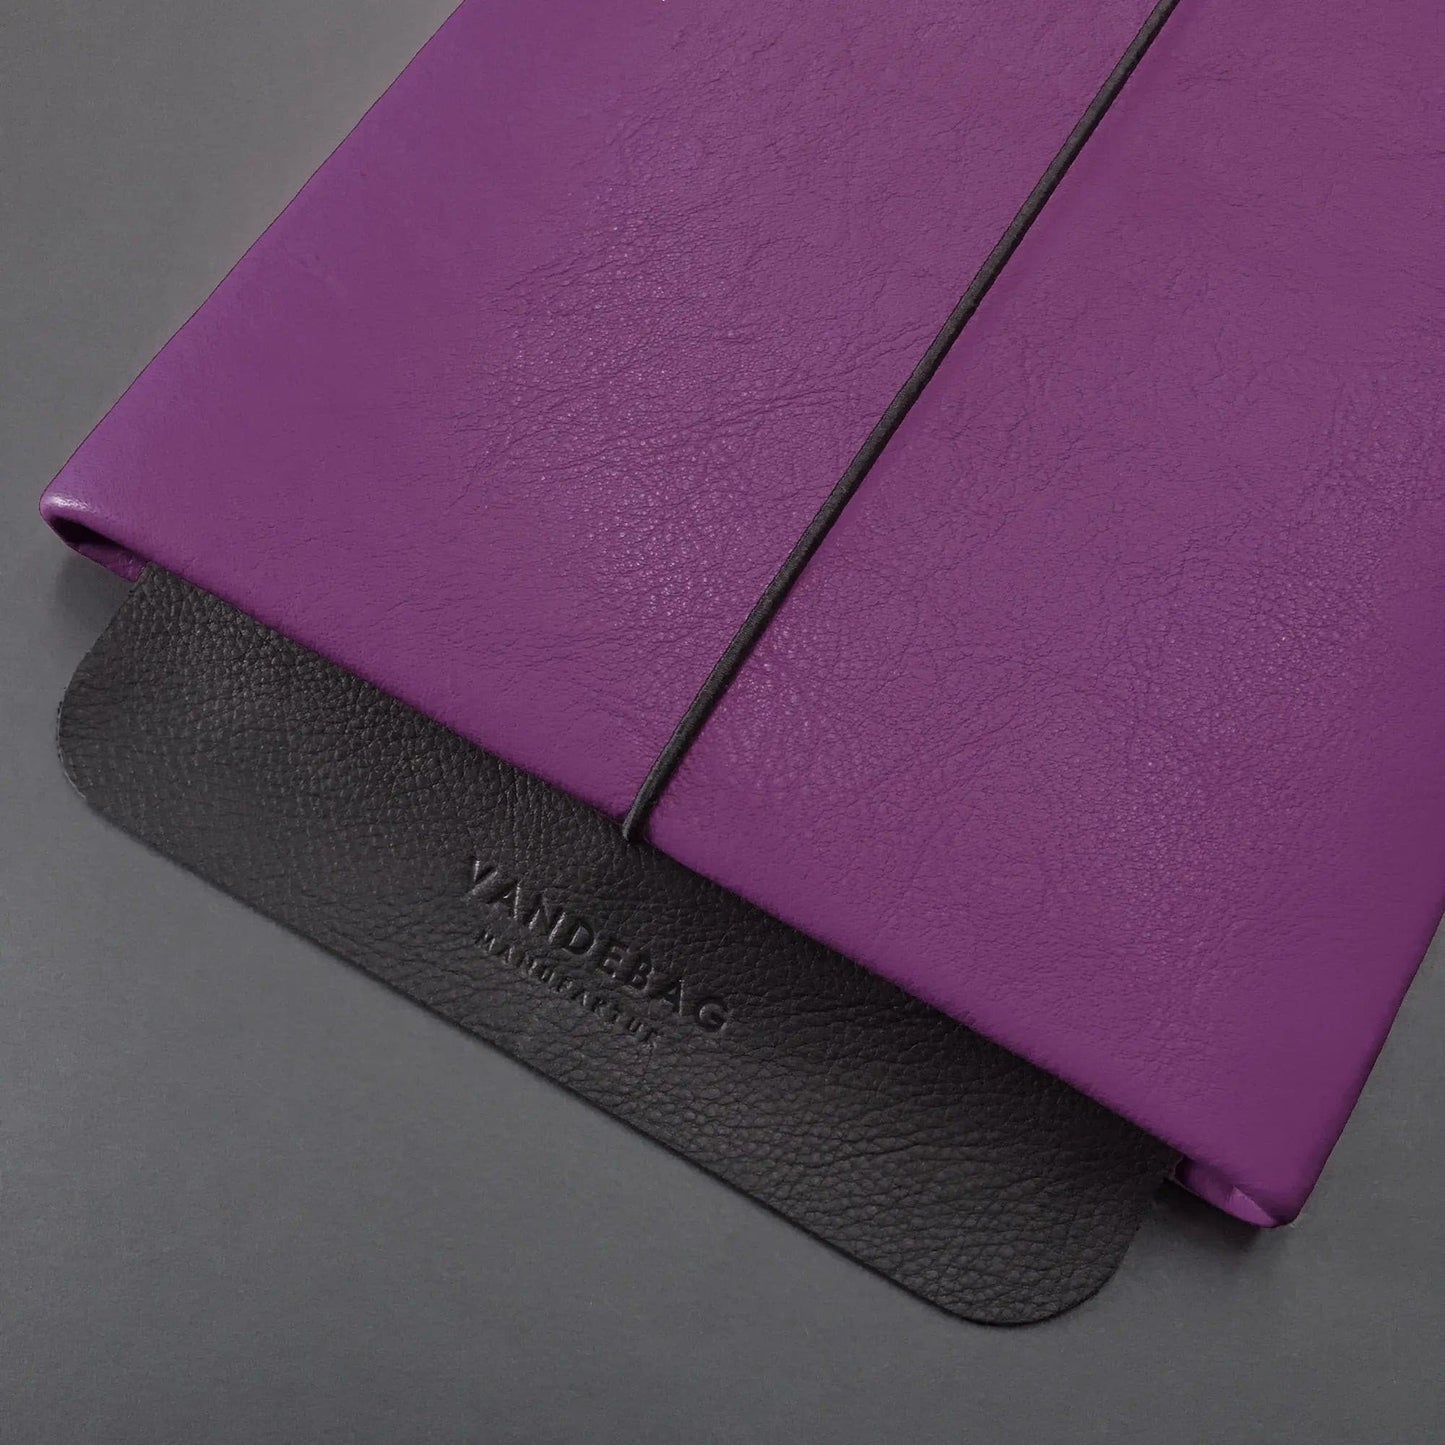 Notebookhülle aus lila Leder mit schwarzer Verschlussklappe aus geprägtem Leder